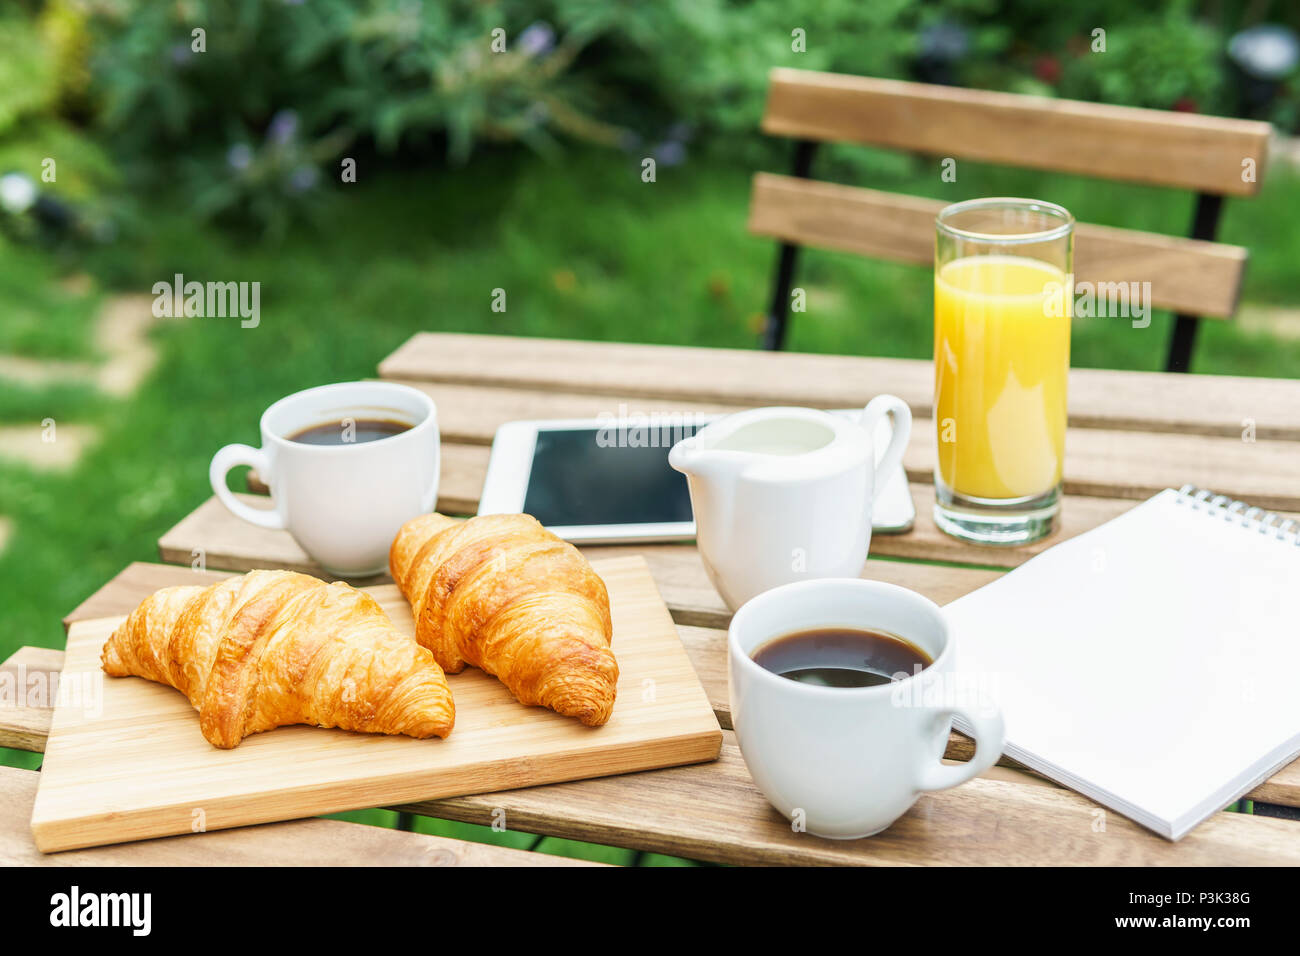 Frühstück im grünen Garten mit französischen Croissants, Kaffee, Orangensaft, Tablet und Hinweise Buch auf hölzernen Tisch Stockfoto